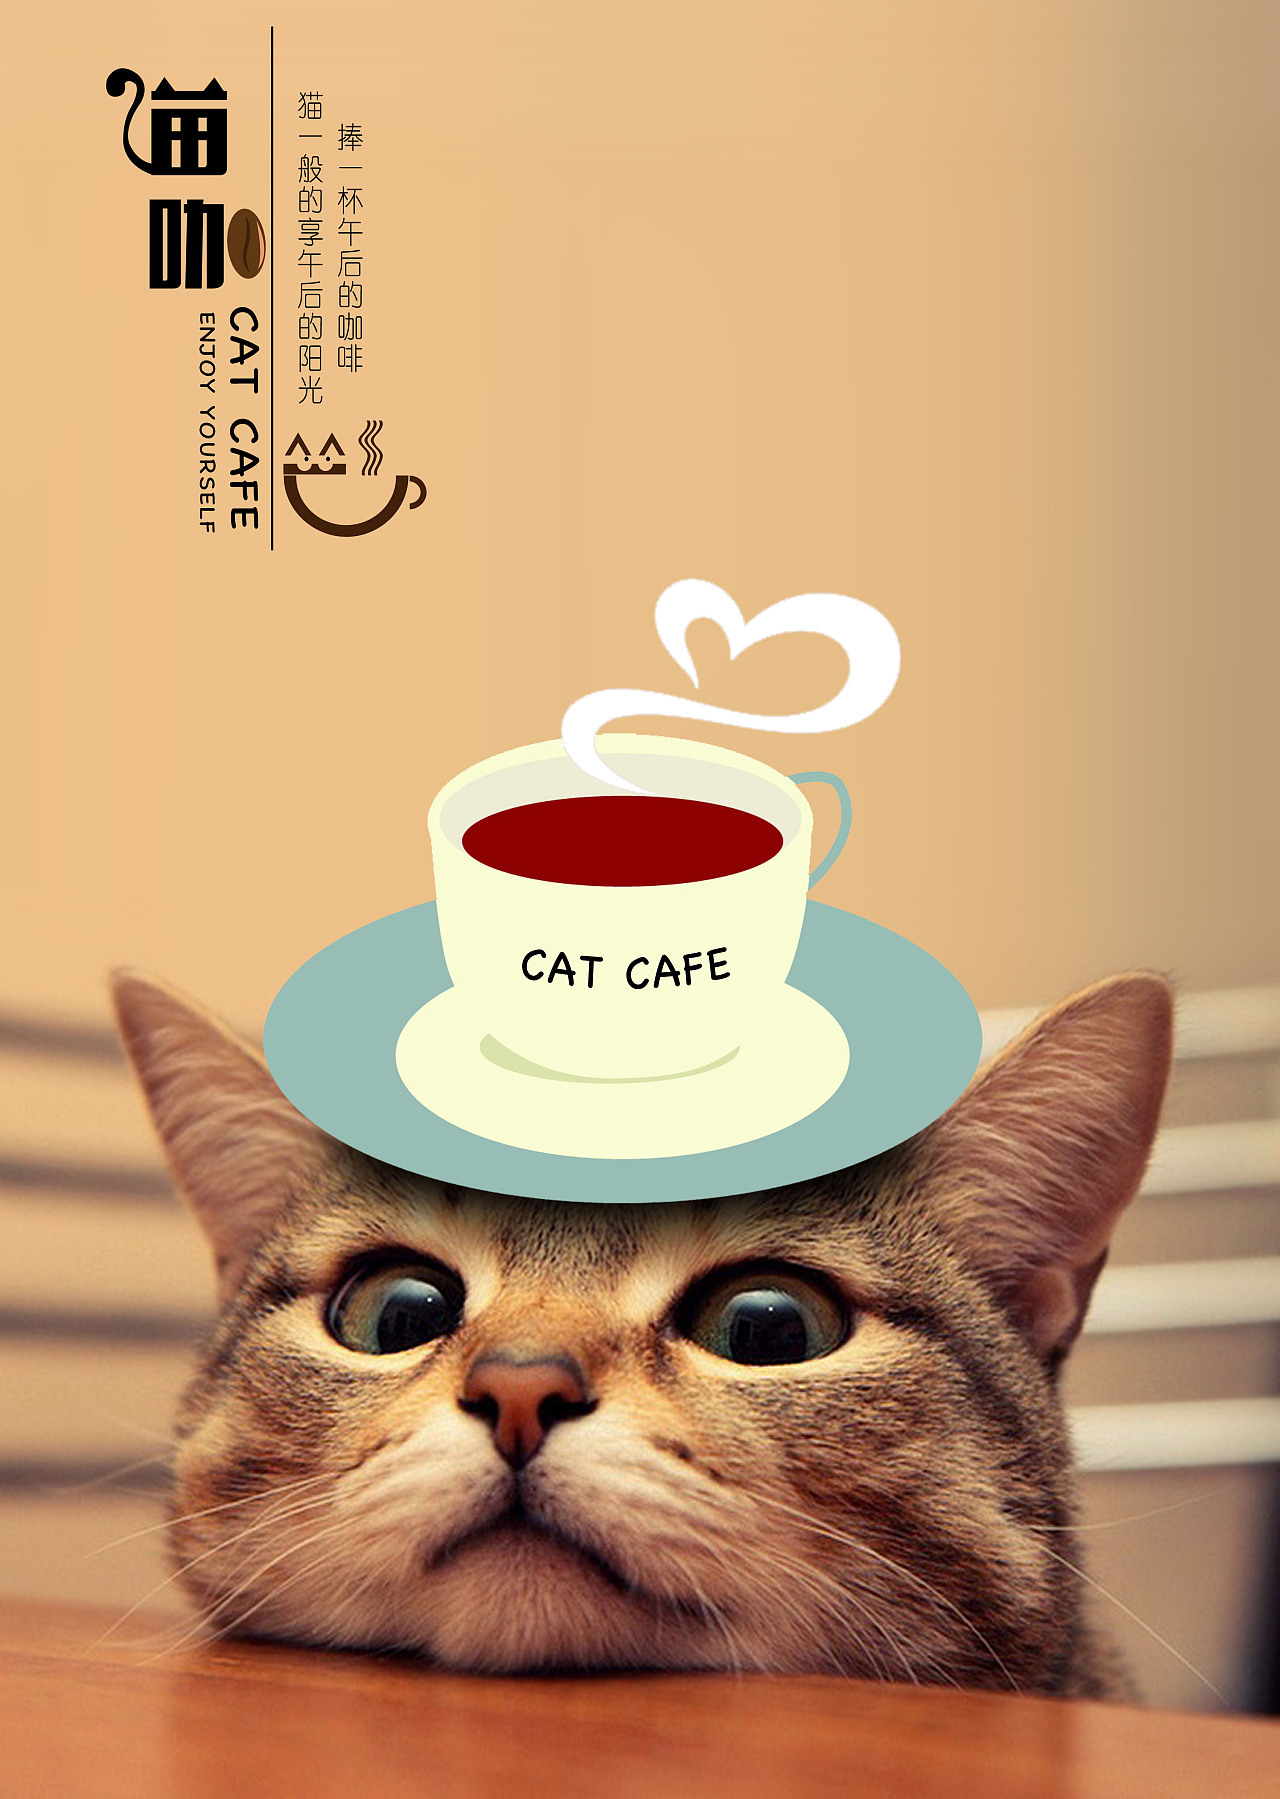 创意手写猫咖字体设计素材下载可商用